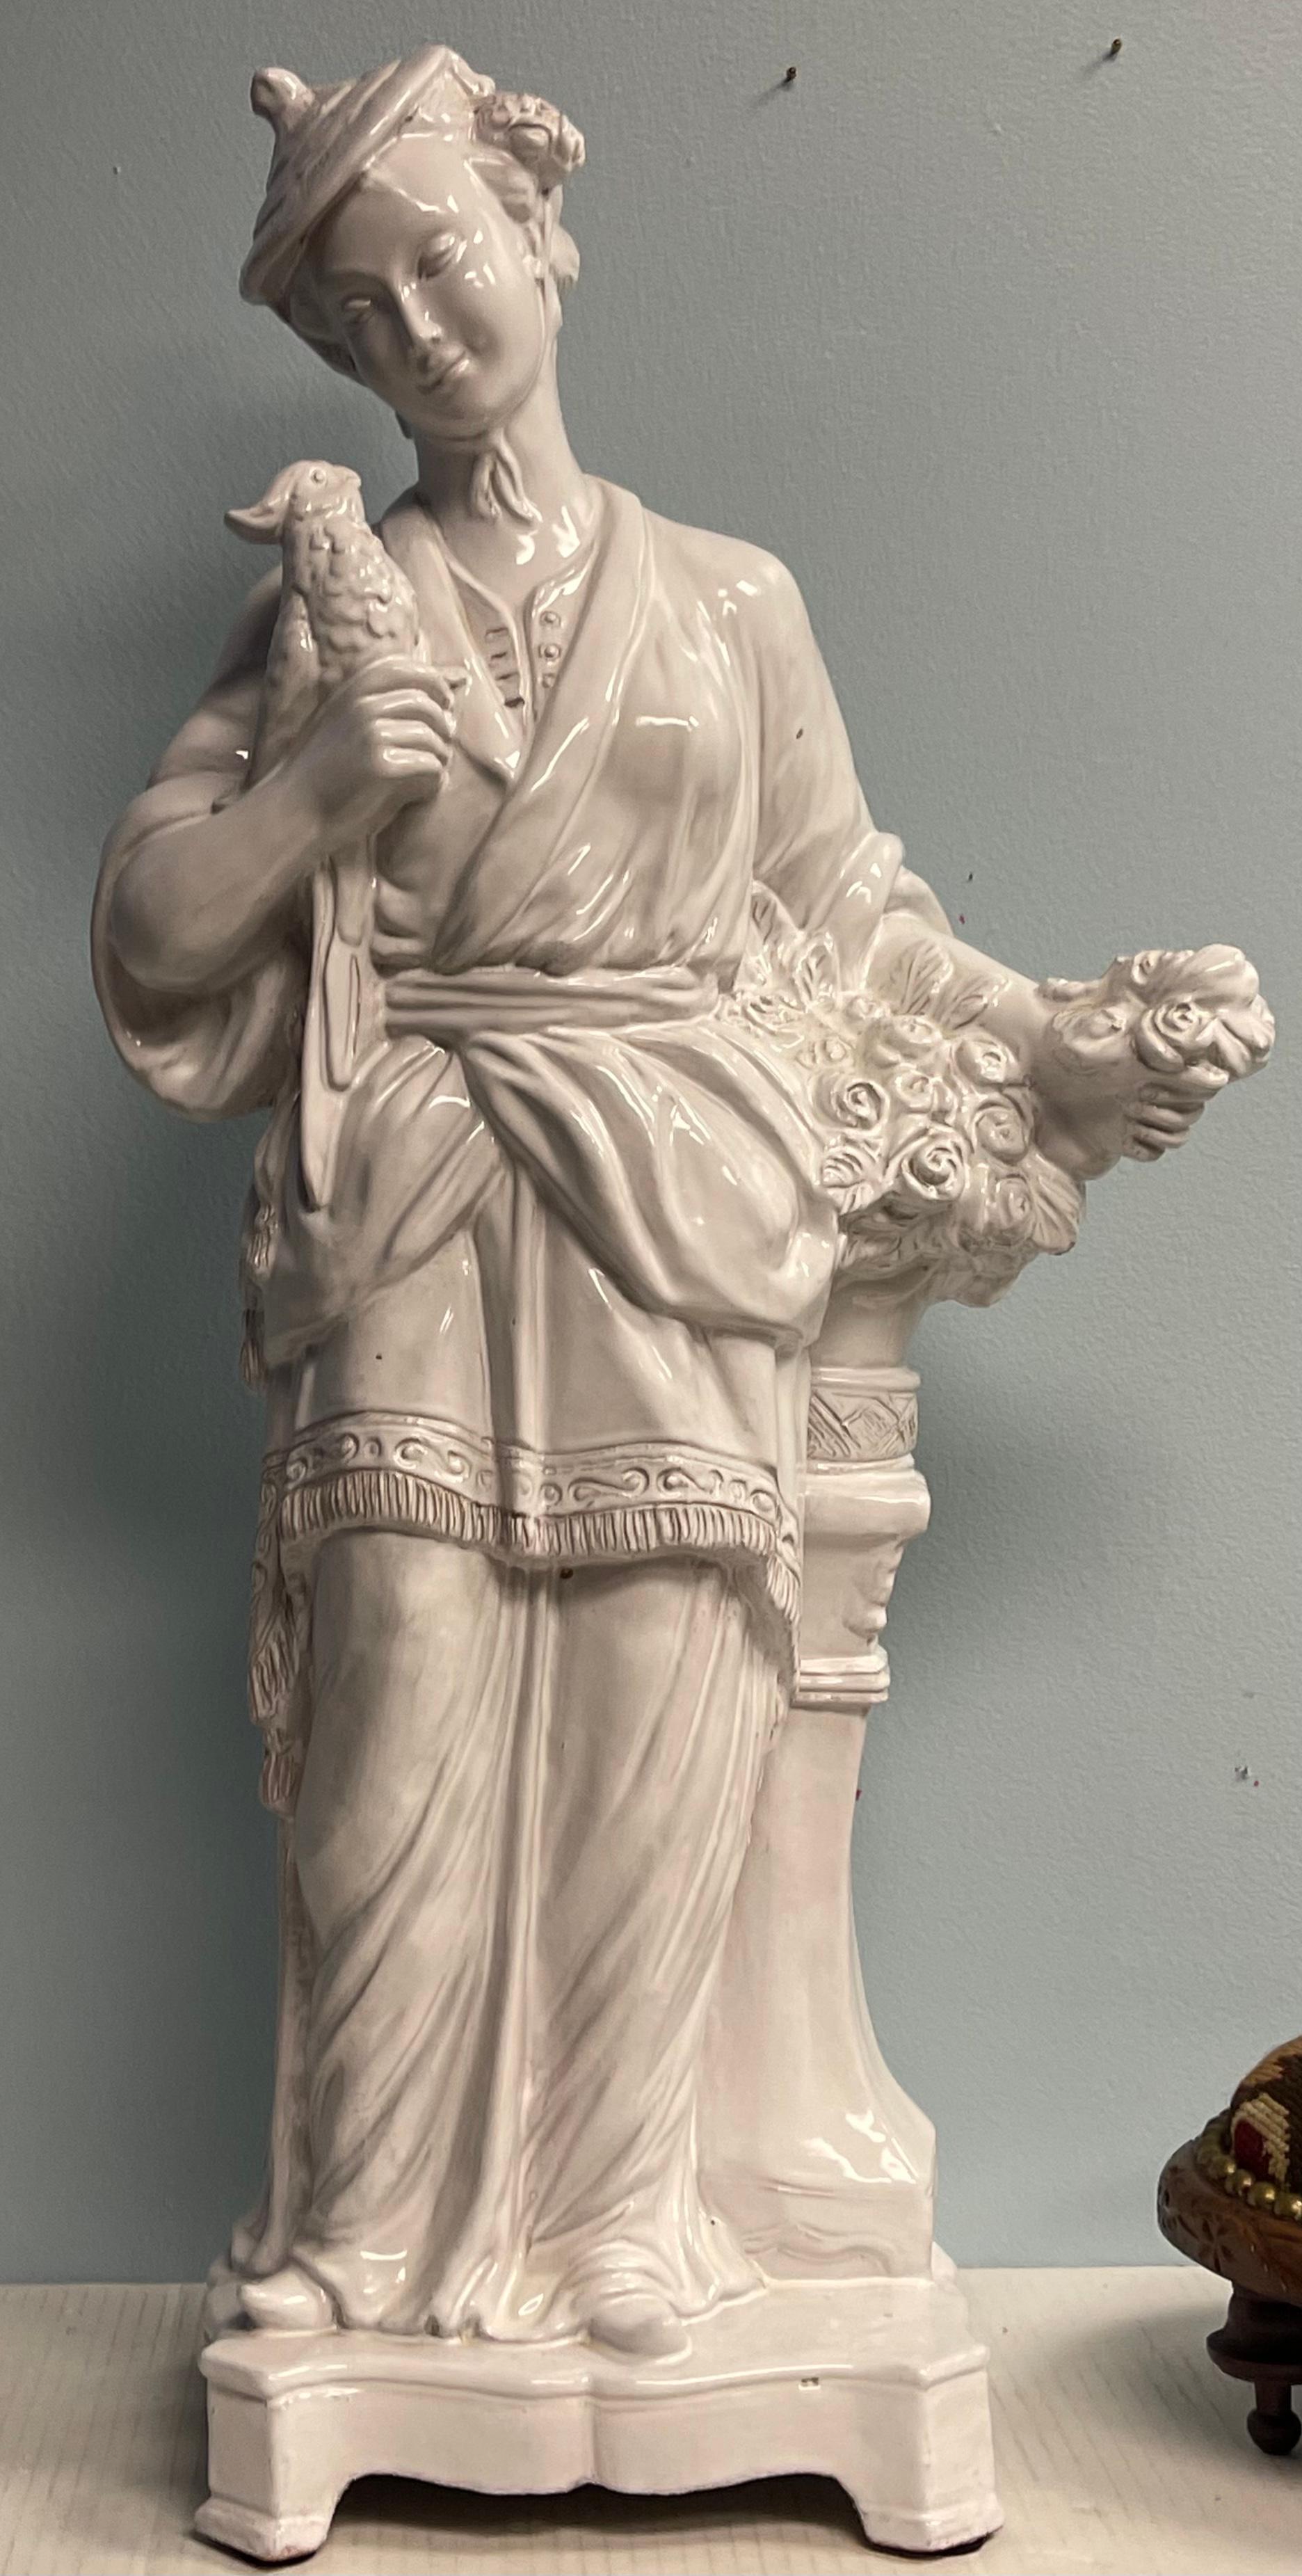 Il s'agit d'une belle figurine féminine en terre cuite glacée italienne à grande échelle. Elle tient un oiseau. La glaçure blanche de la majolique lui donne un aspect de Blanc de Chine.